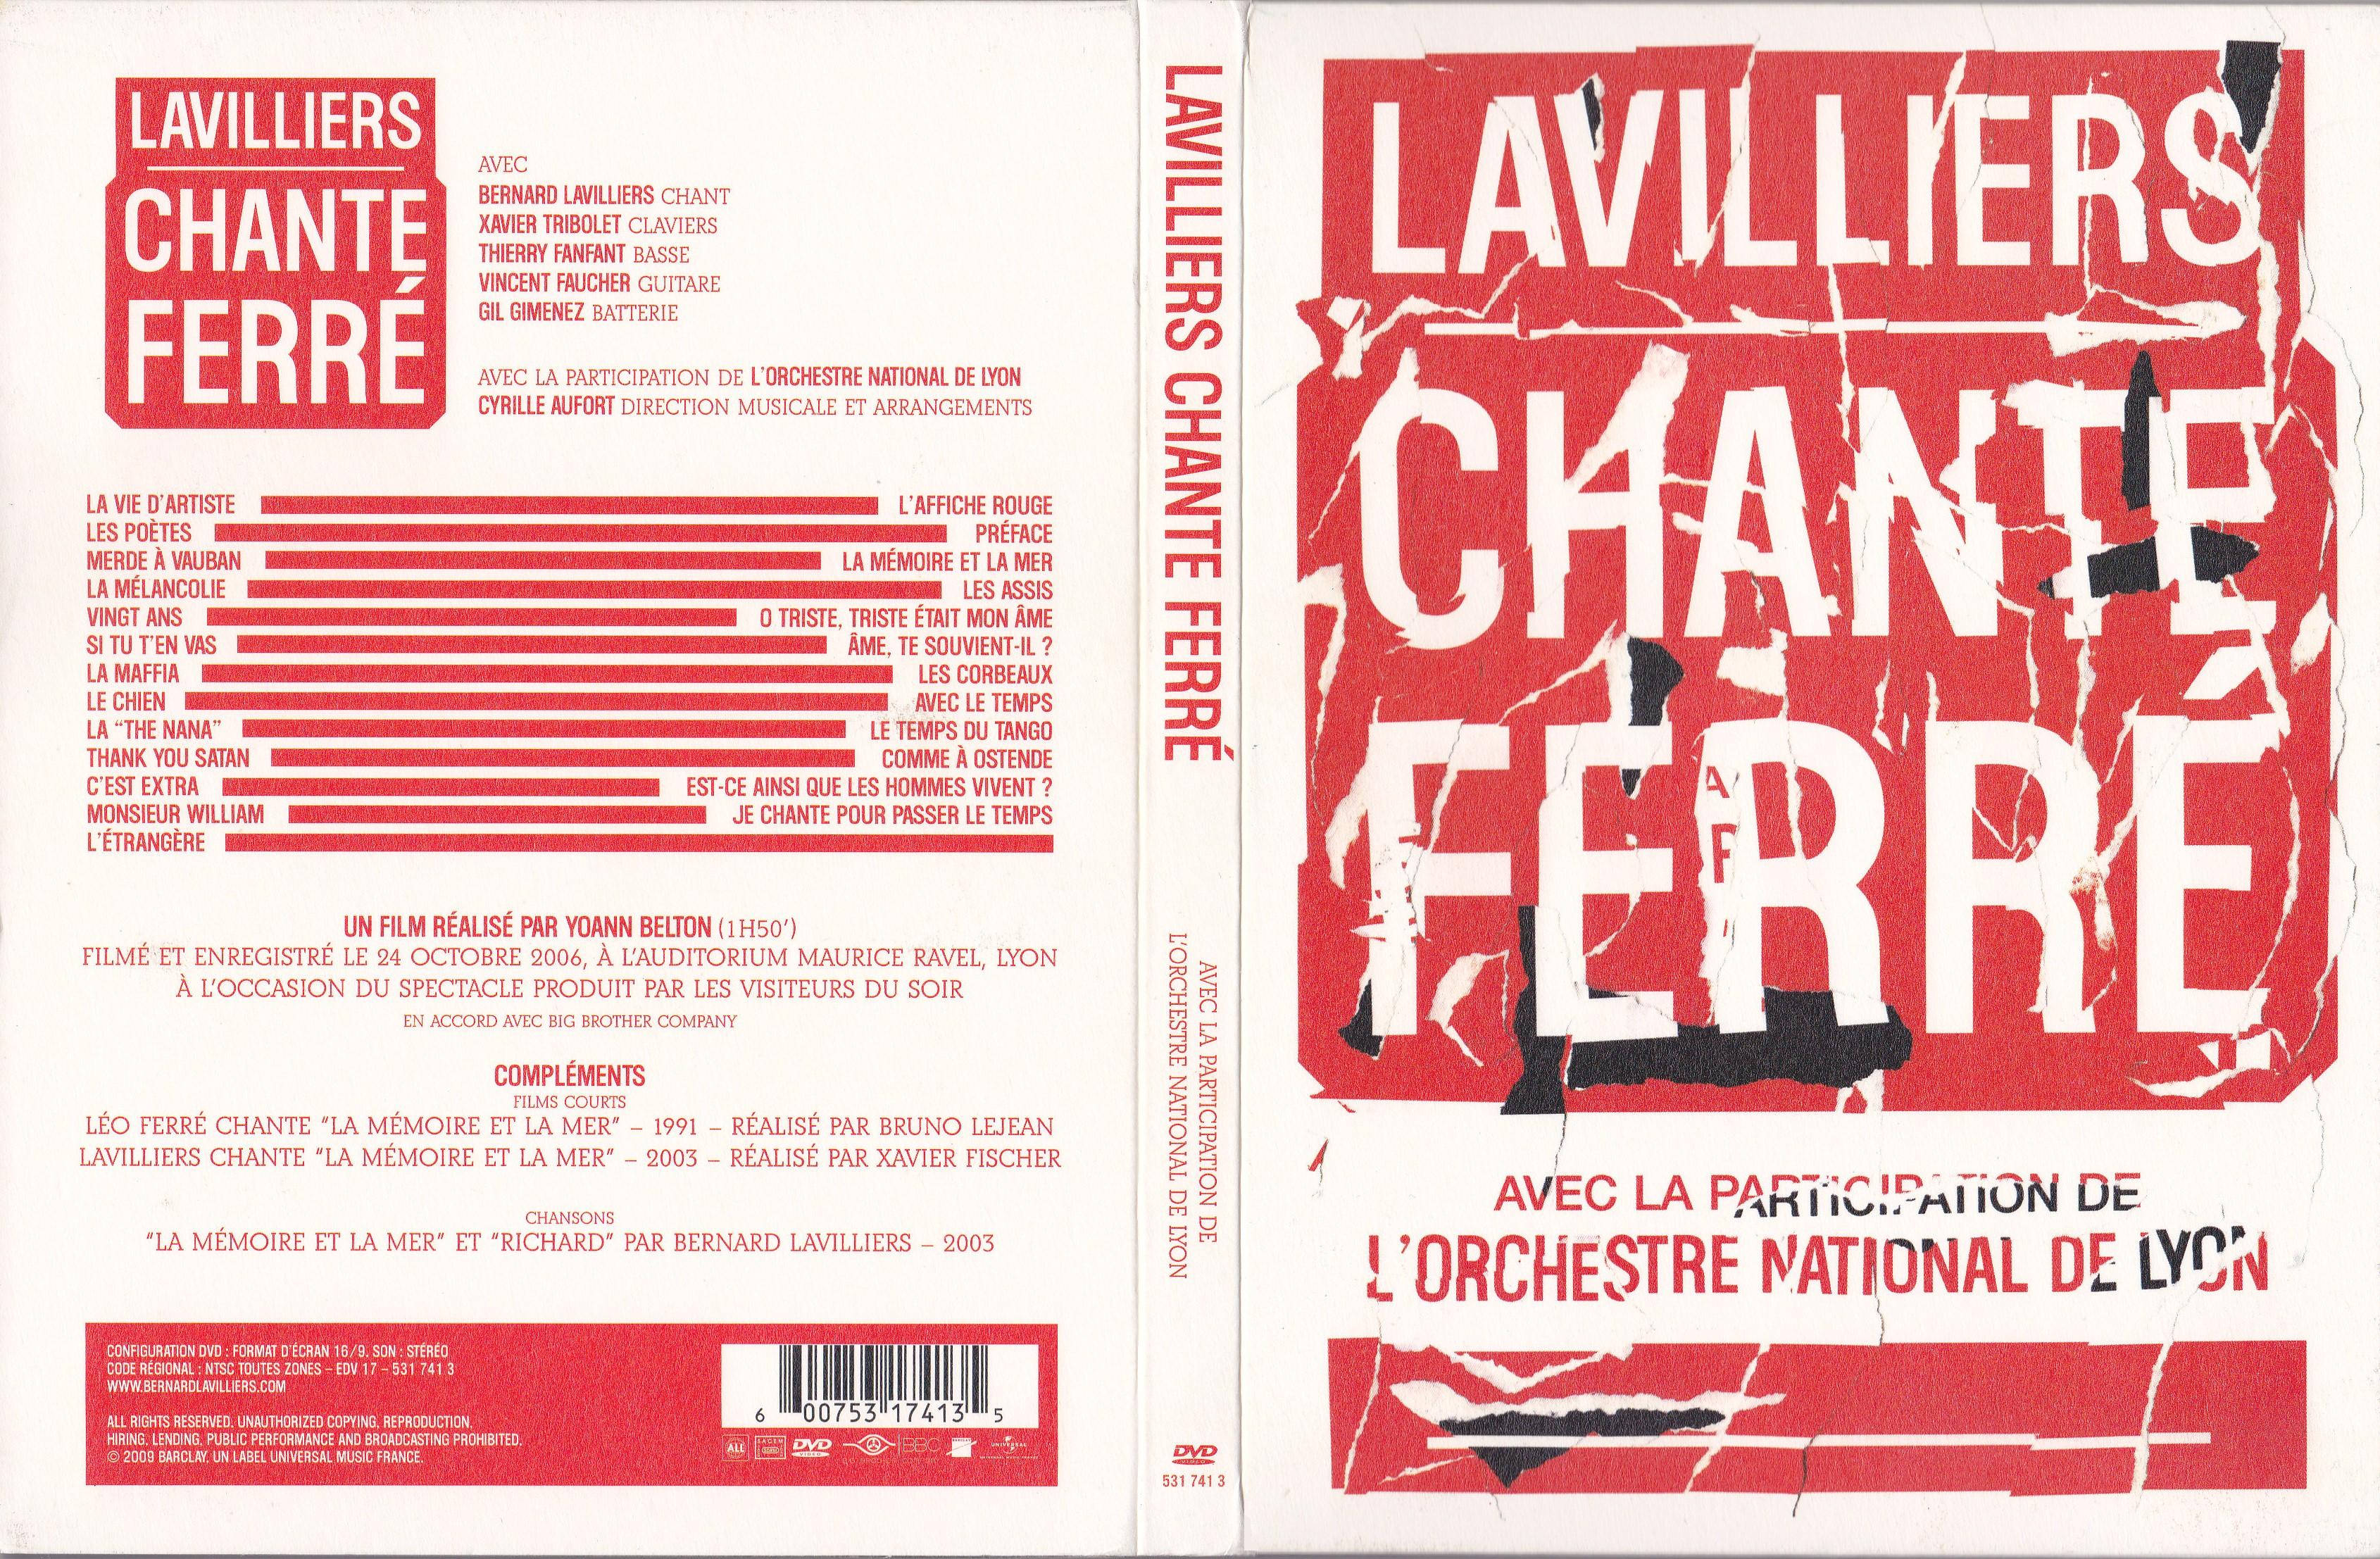 Jaquette DVD Lavilliers Chante Ferr